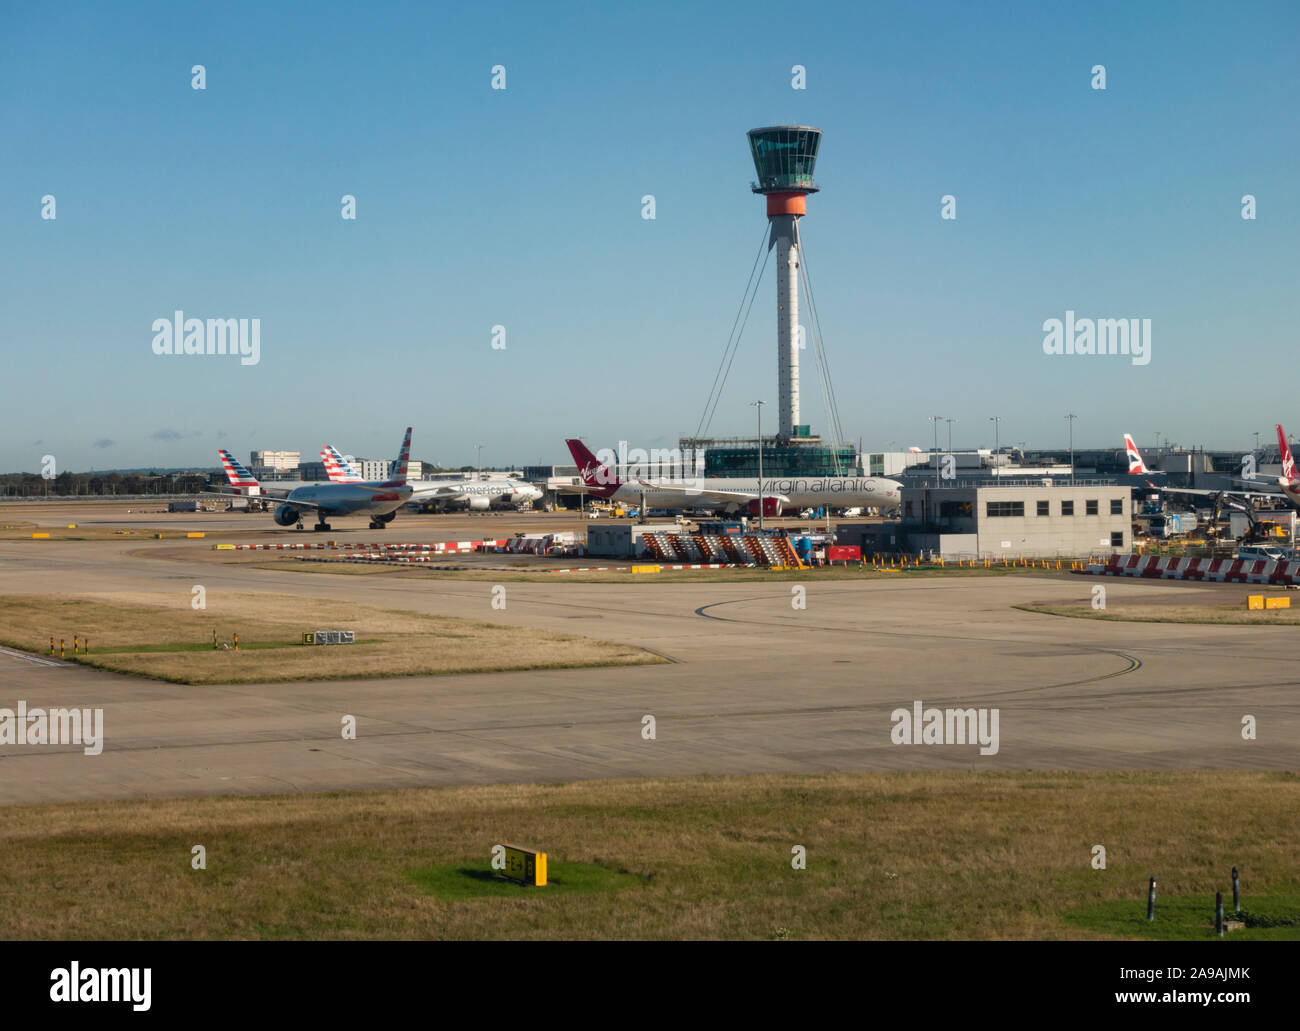 Tour de contrôle de la circulation aérienne et l'avion stationné à l'aéroport Heathrow de Londres, Angleterre, Royaume-Uni Banque D'Images